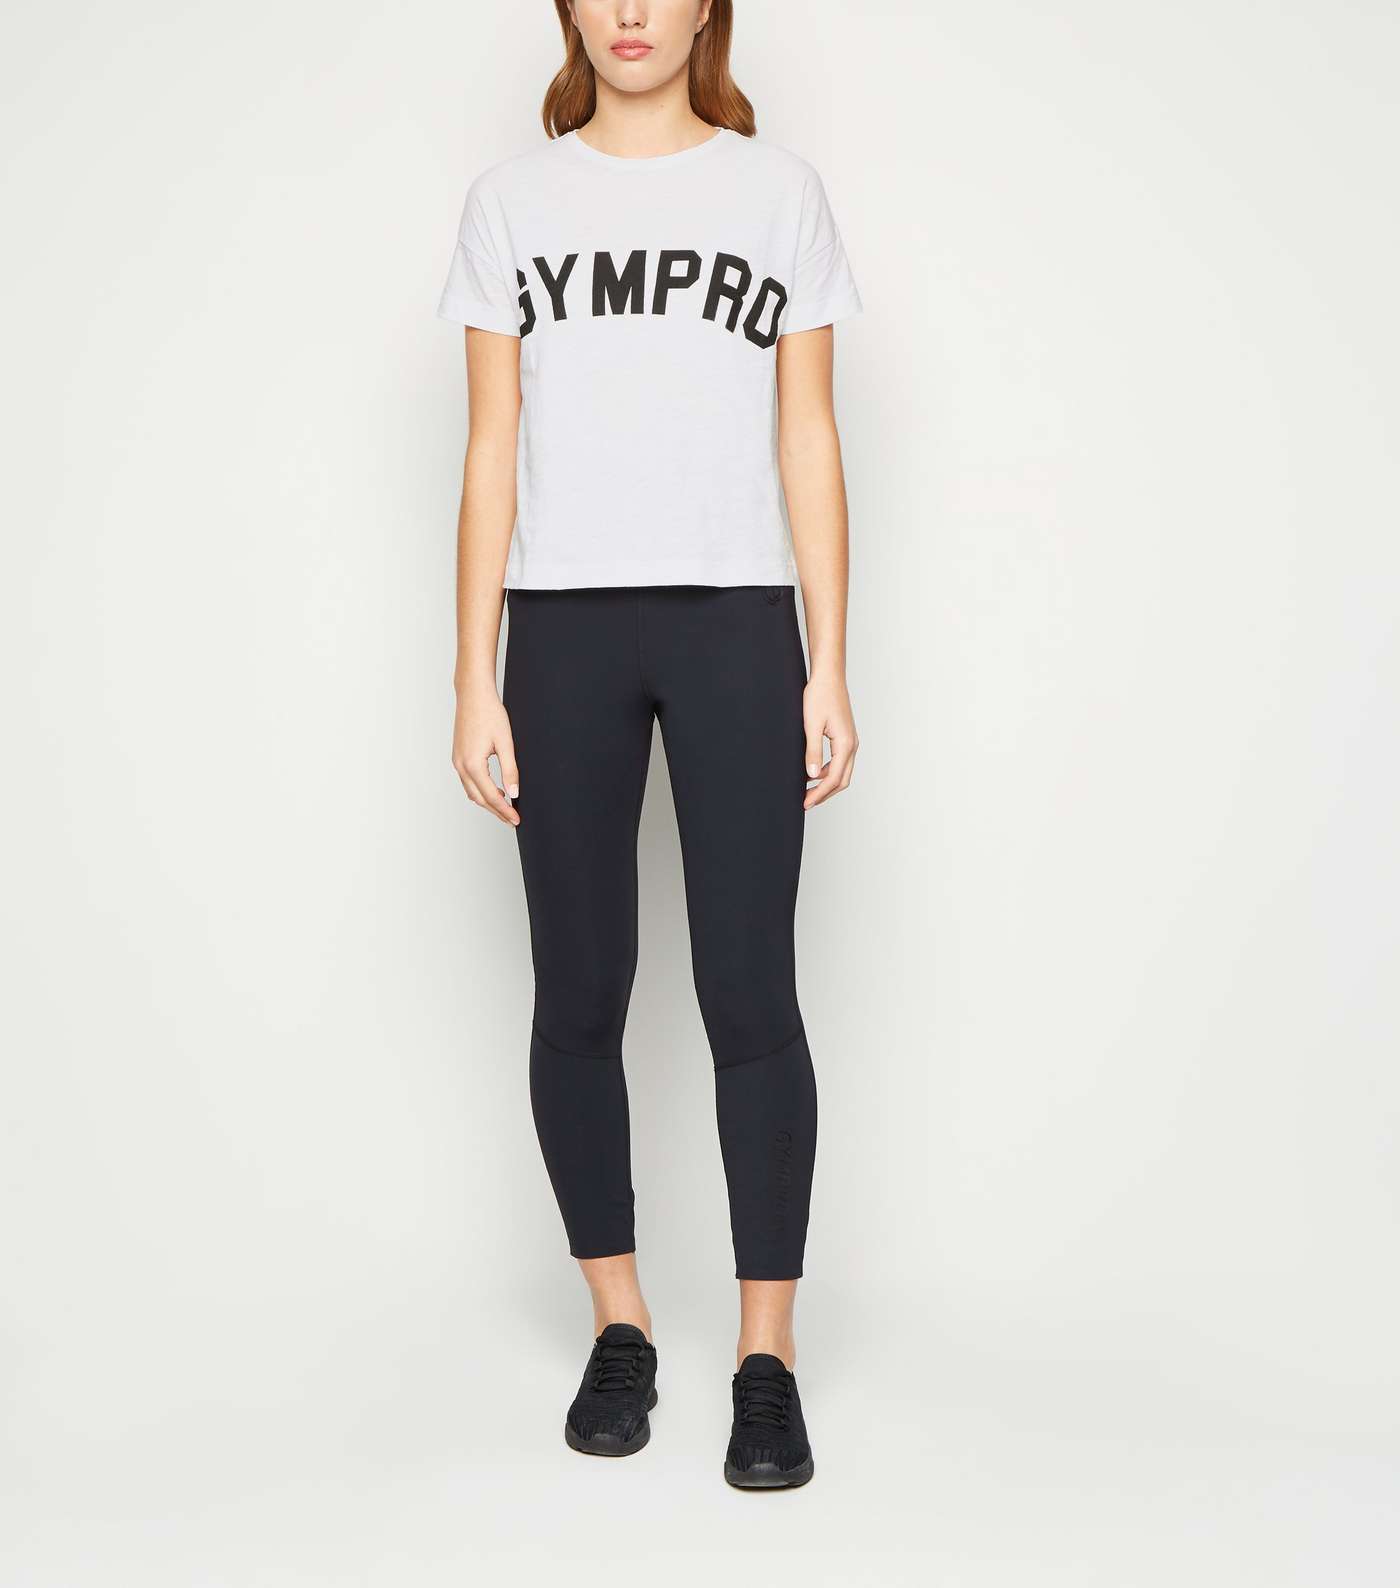 GymPro White Cropped Logo T-Shirt Image 2